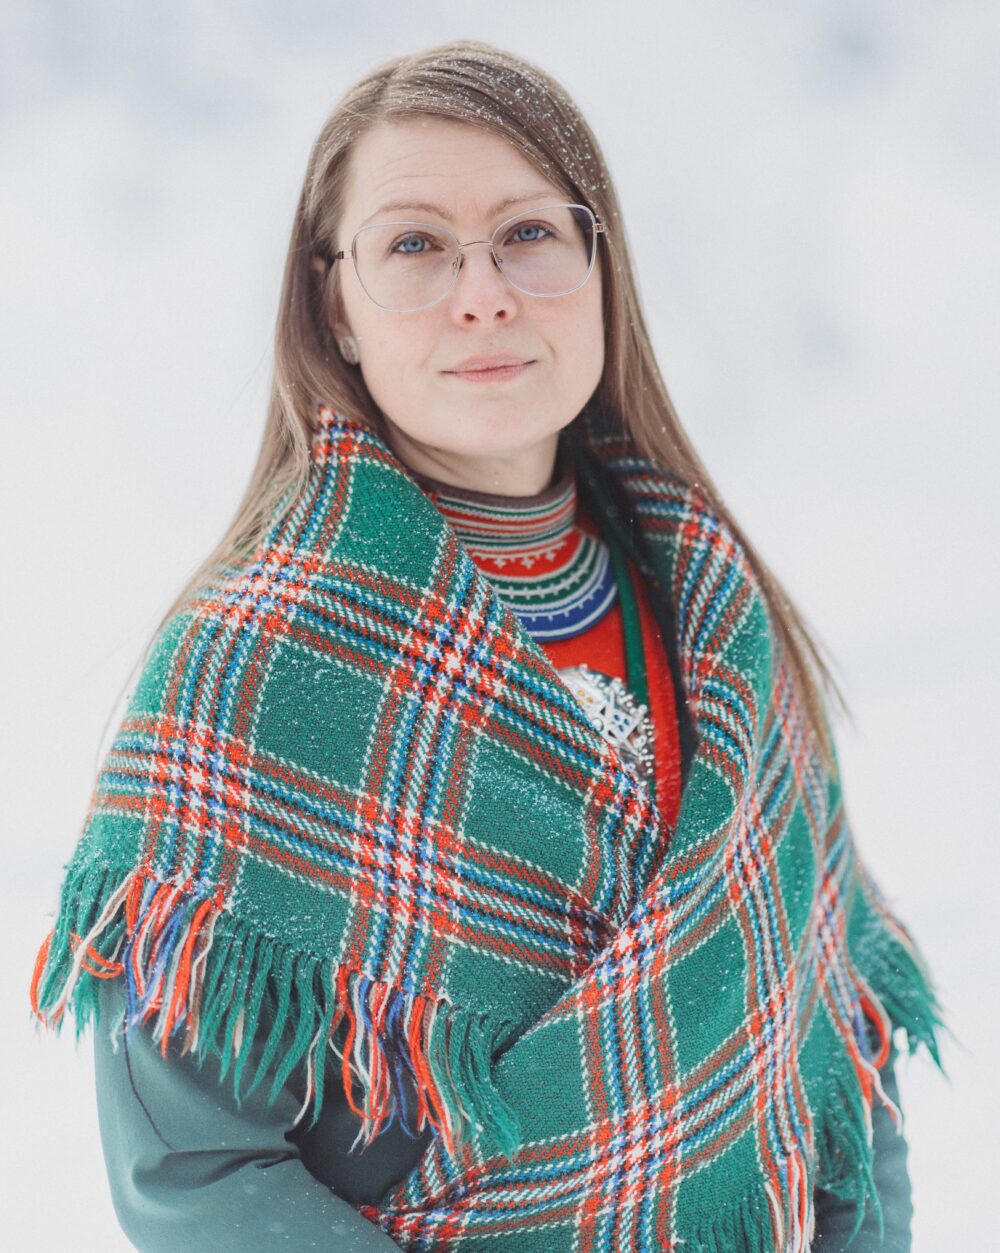 en dame med samiske klær og snø i håret